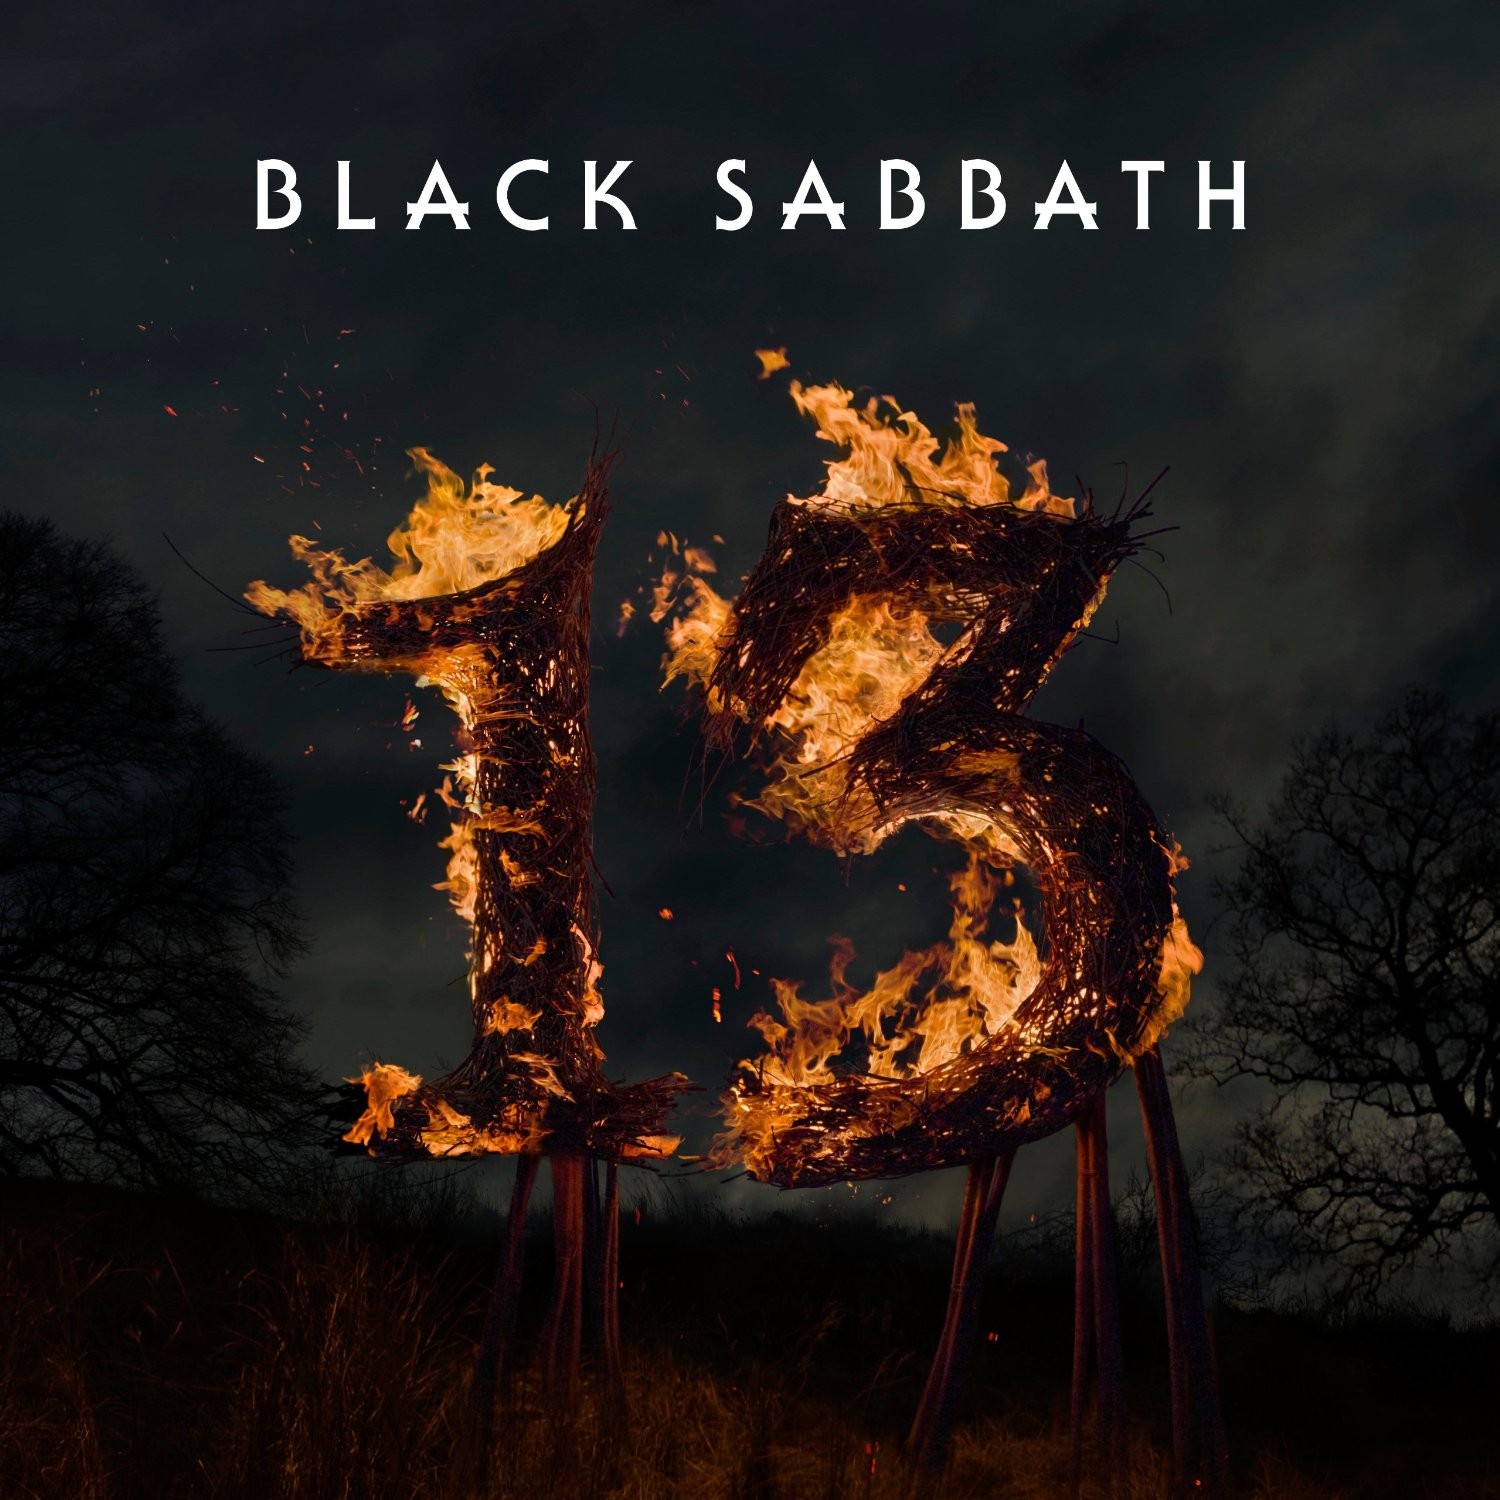 Black Sabbath 13 Album Cover